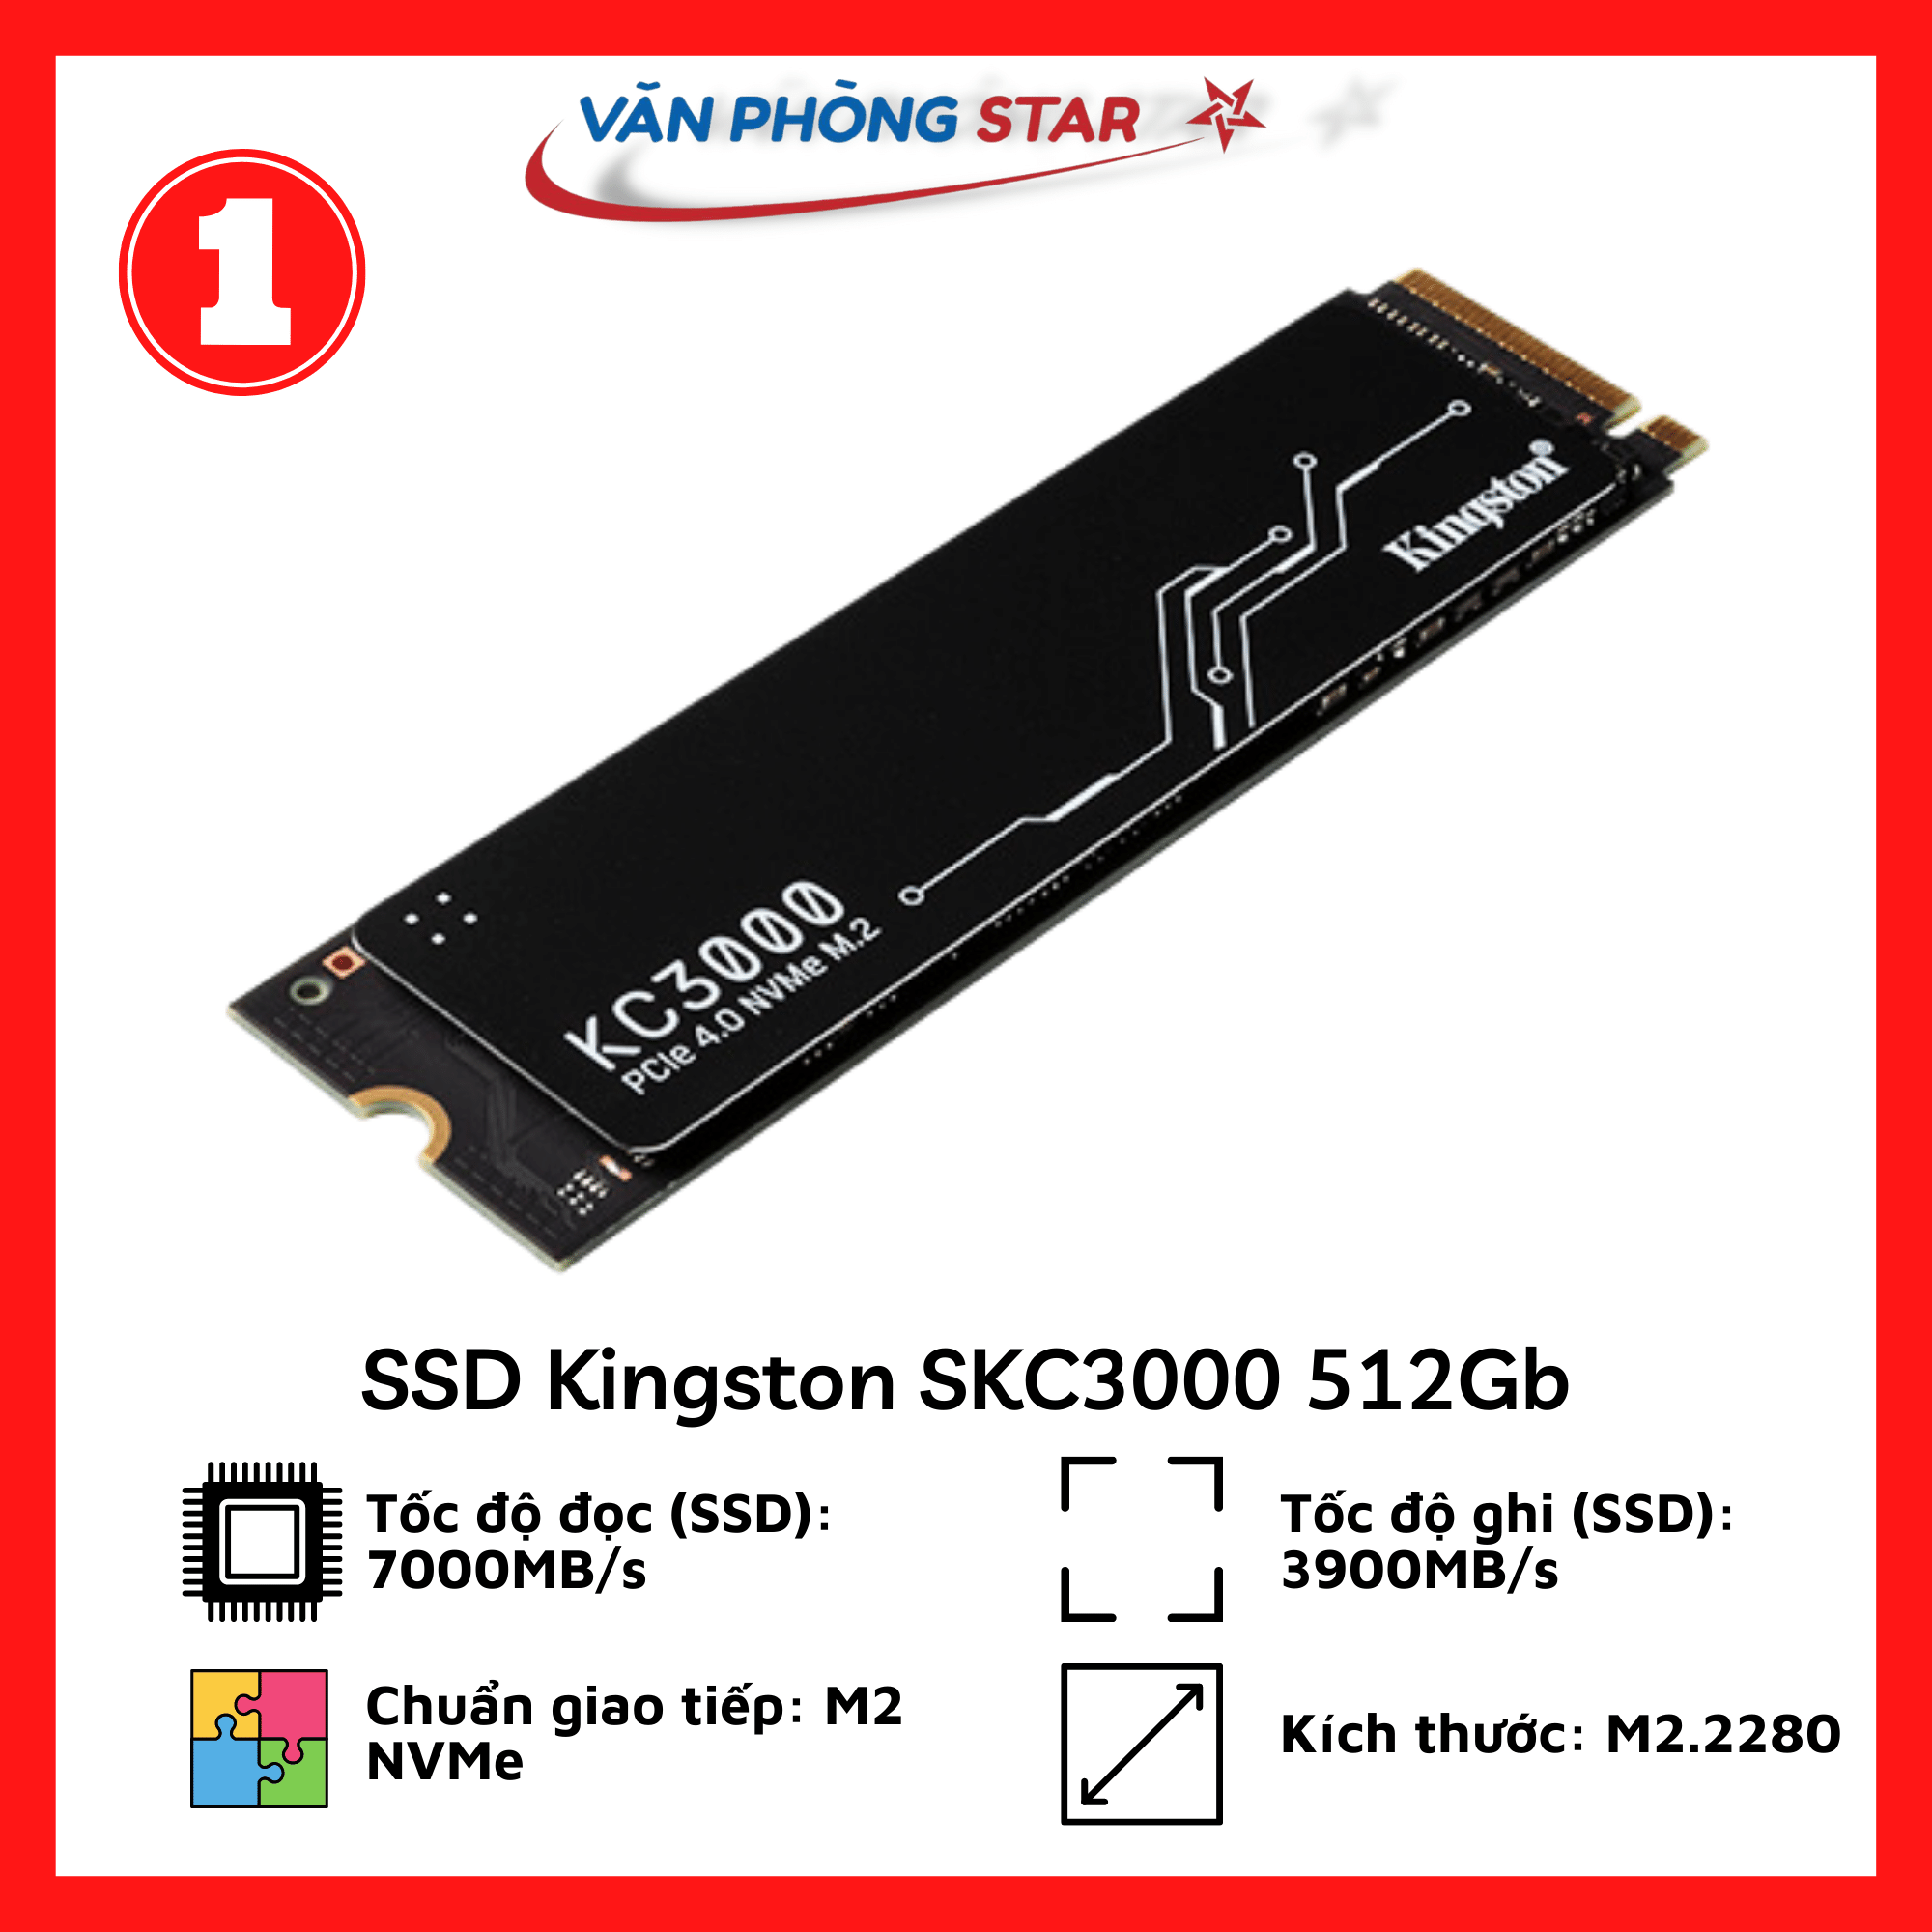 SSD Kingston SKC3000 512Gb PCIe NVMe Gen 4.0